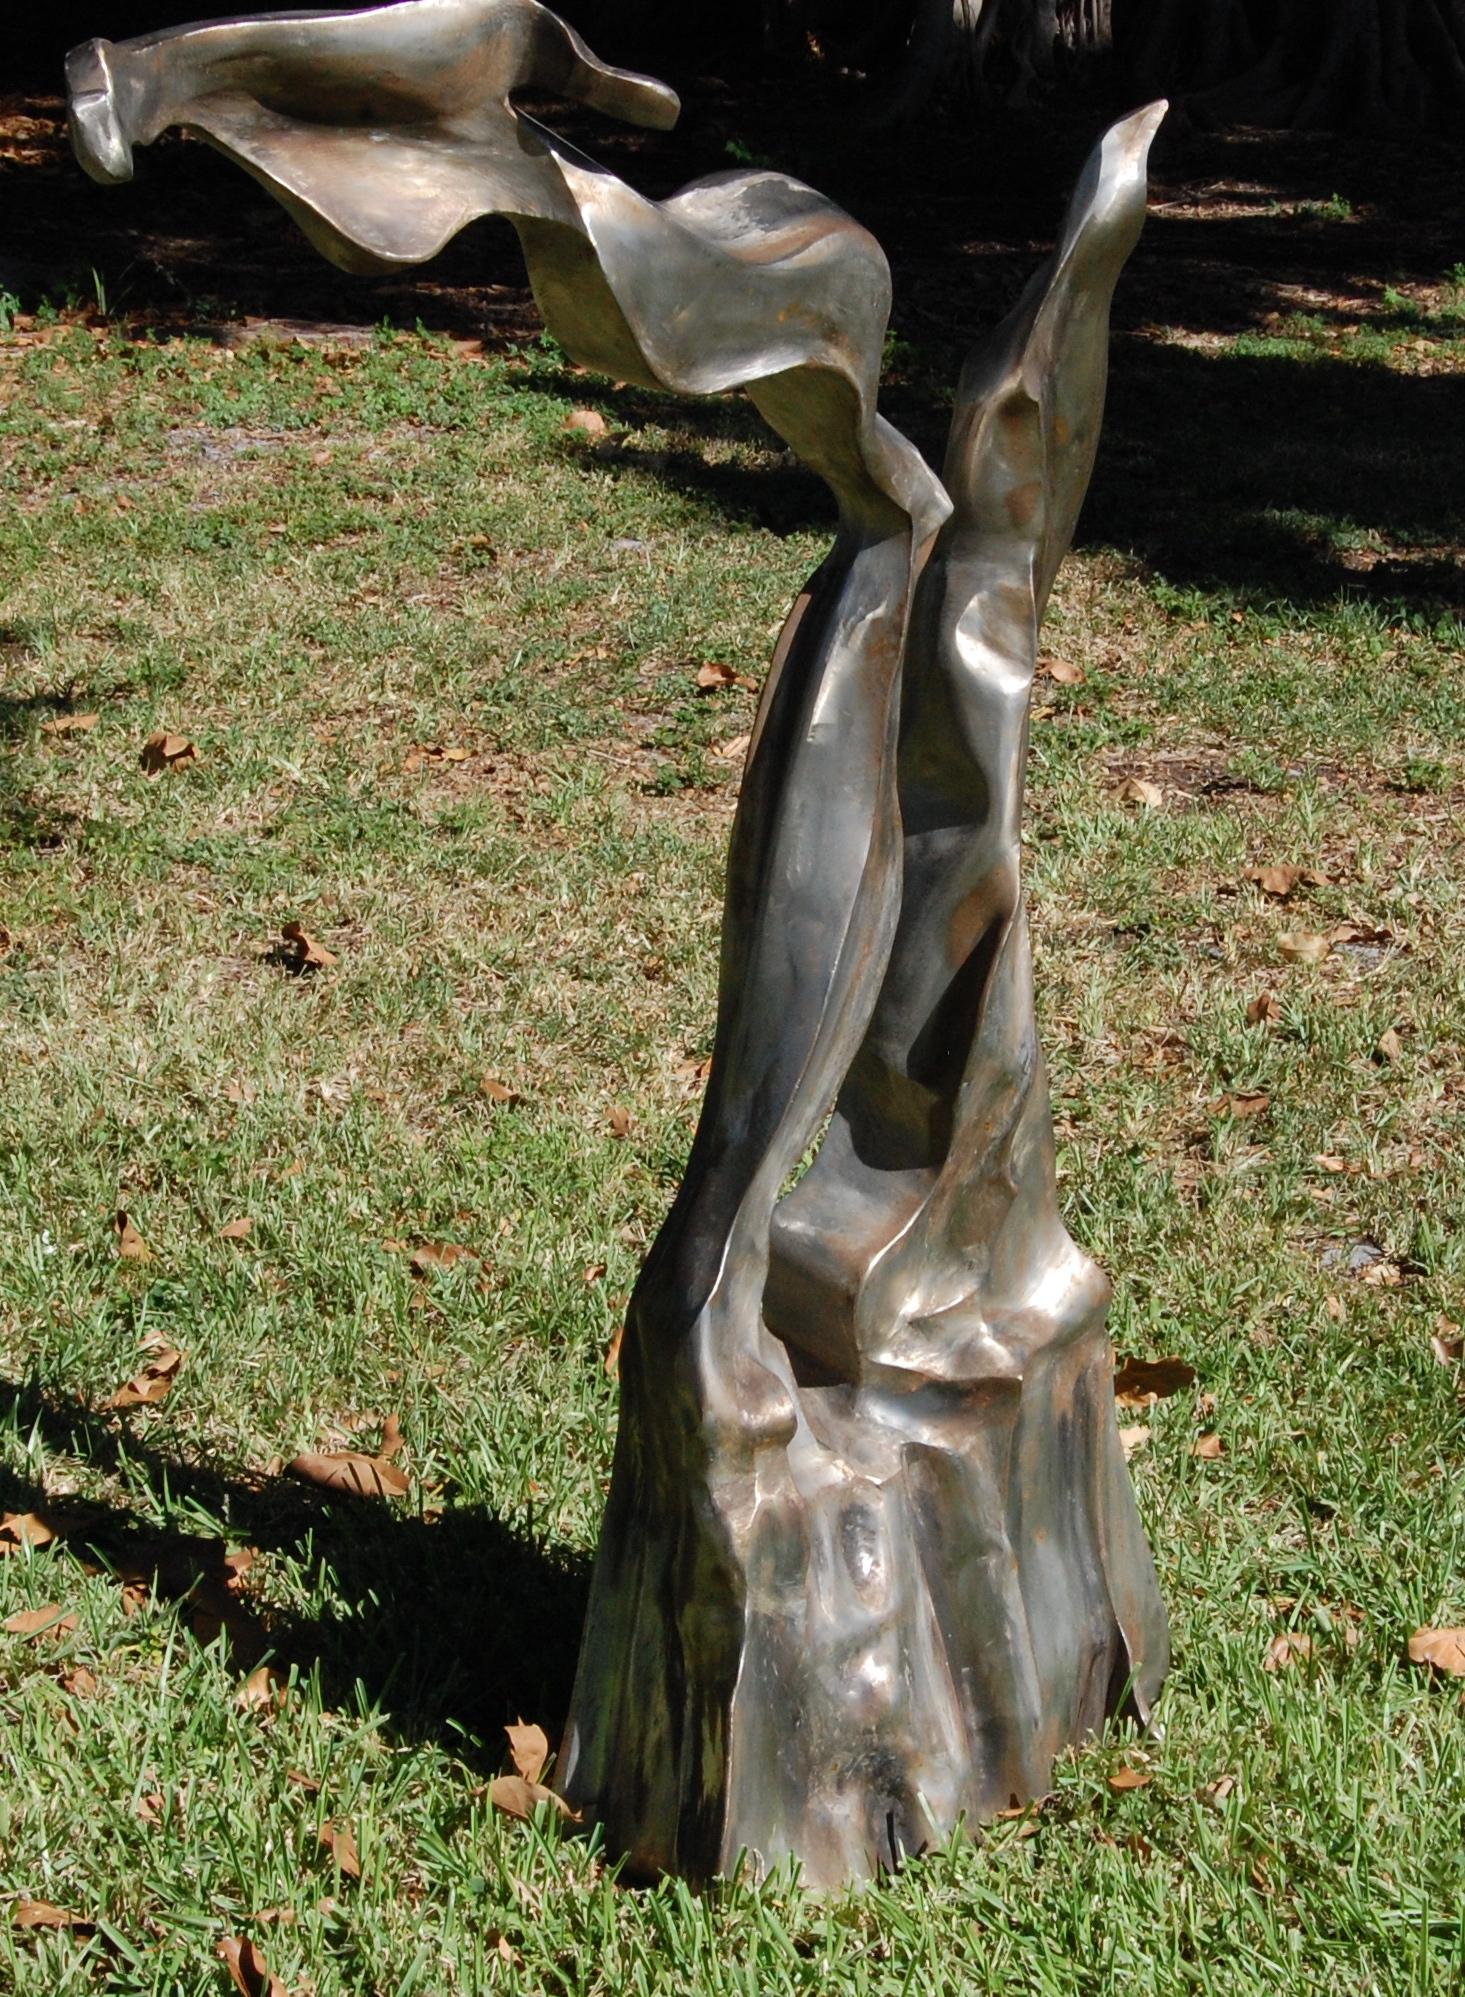  Modern Garden Art Large metal abstract sculpture.
Stainless steel, size: 56H 45w 12D signed Bill Wilson.
